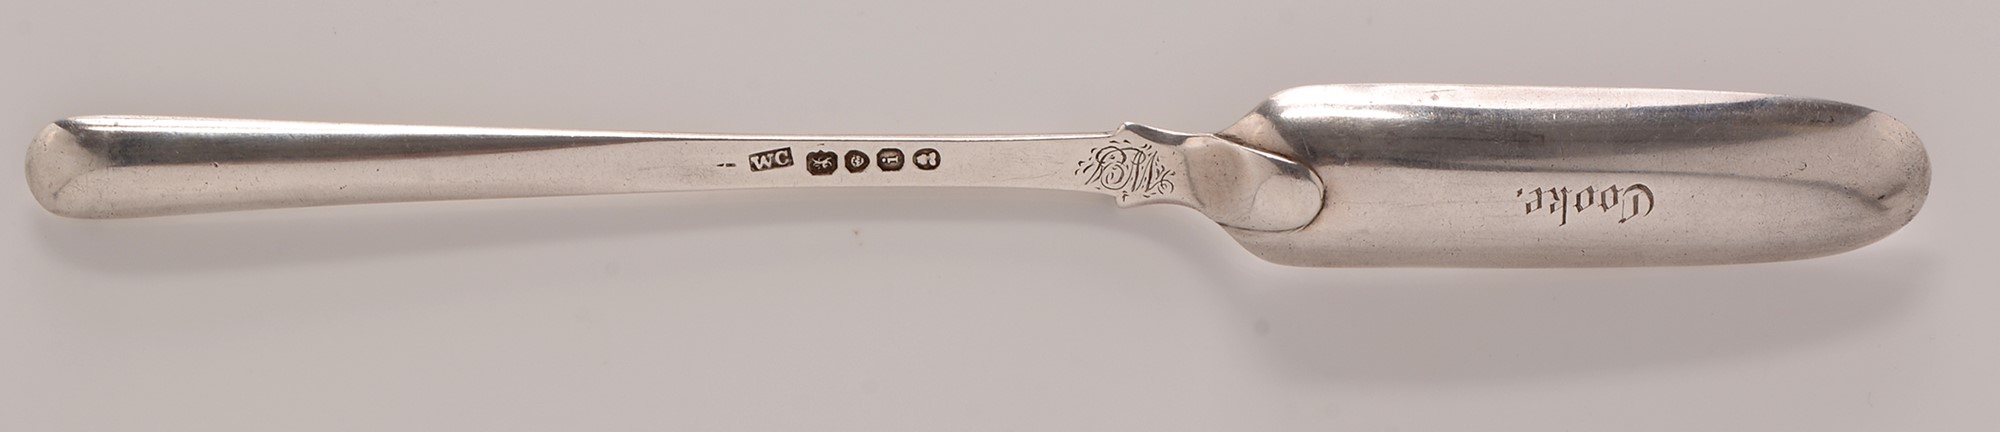 Silver marrow scoop - Image 2 of 2